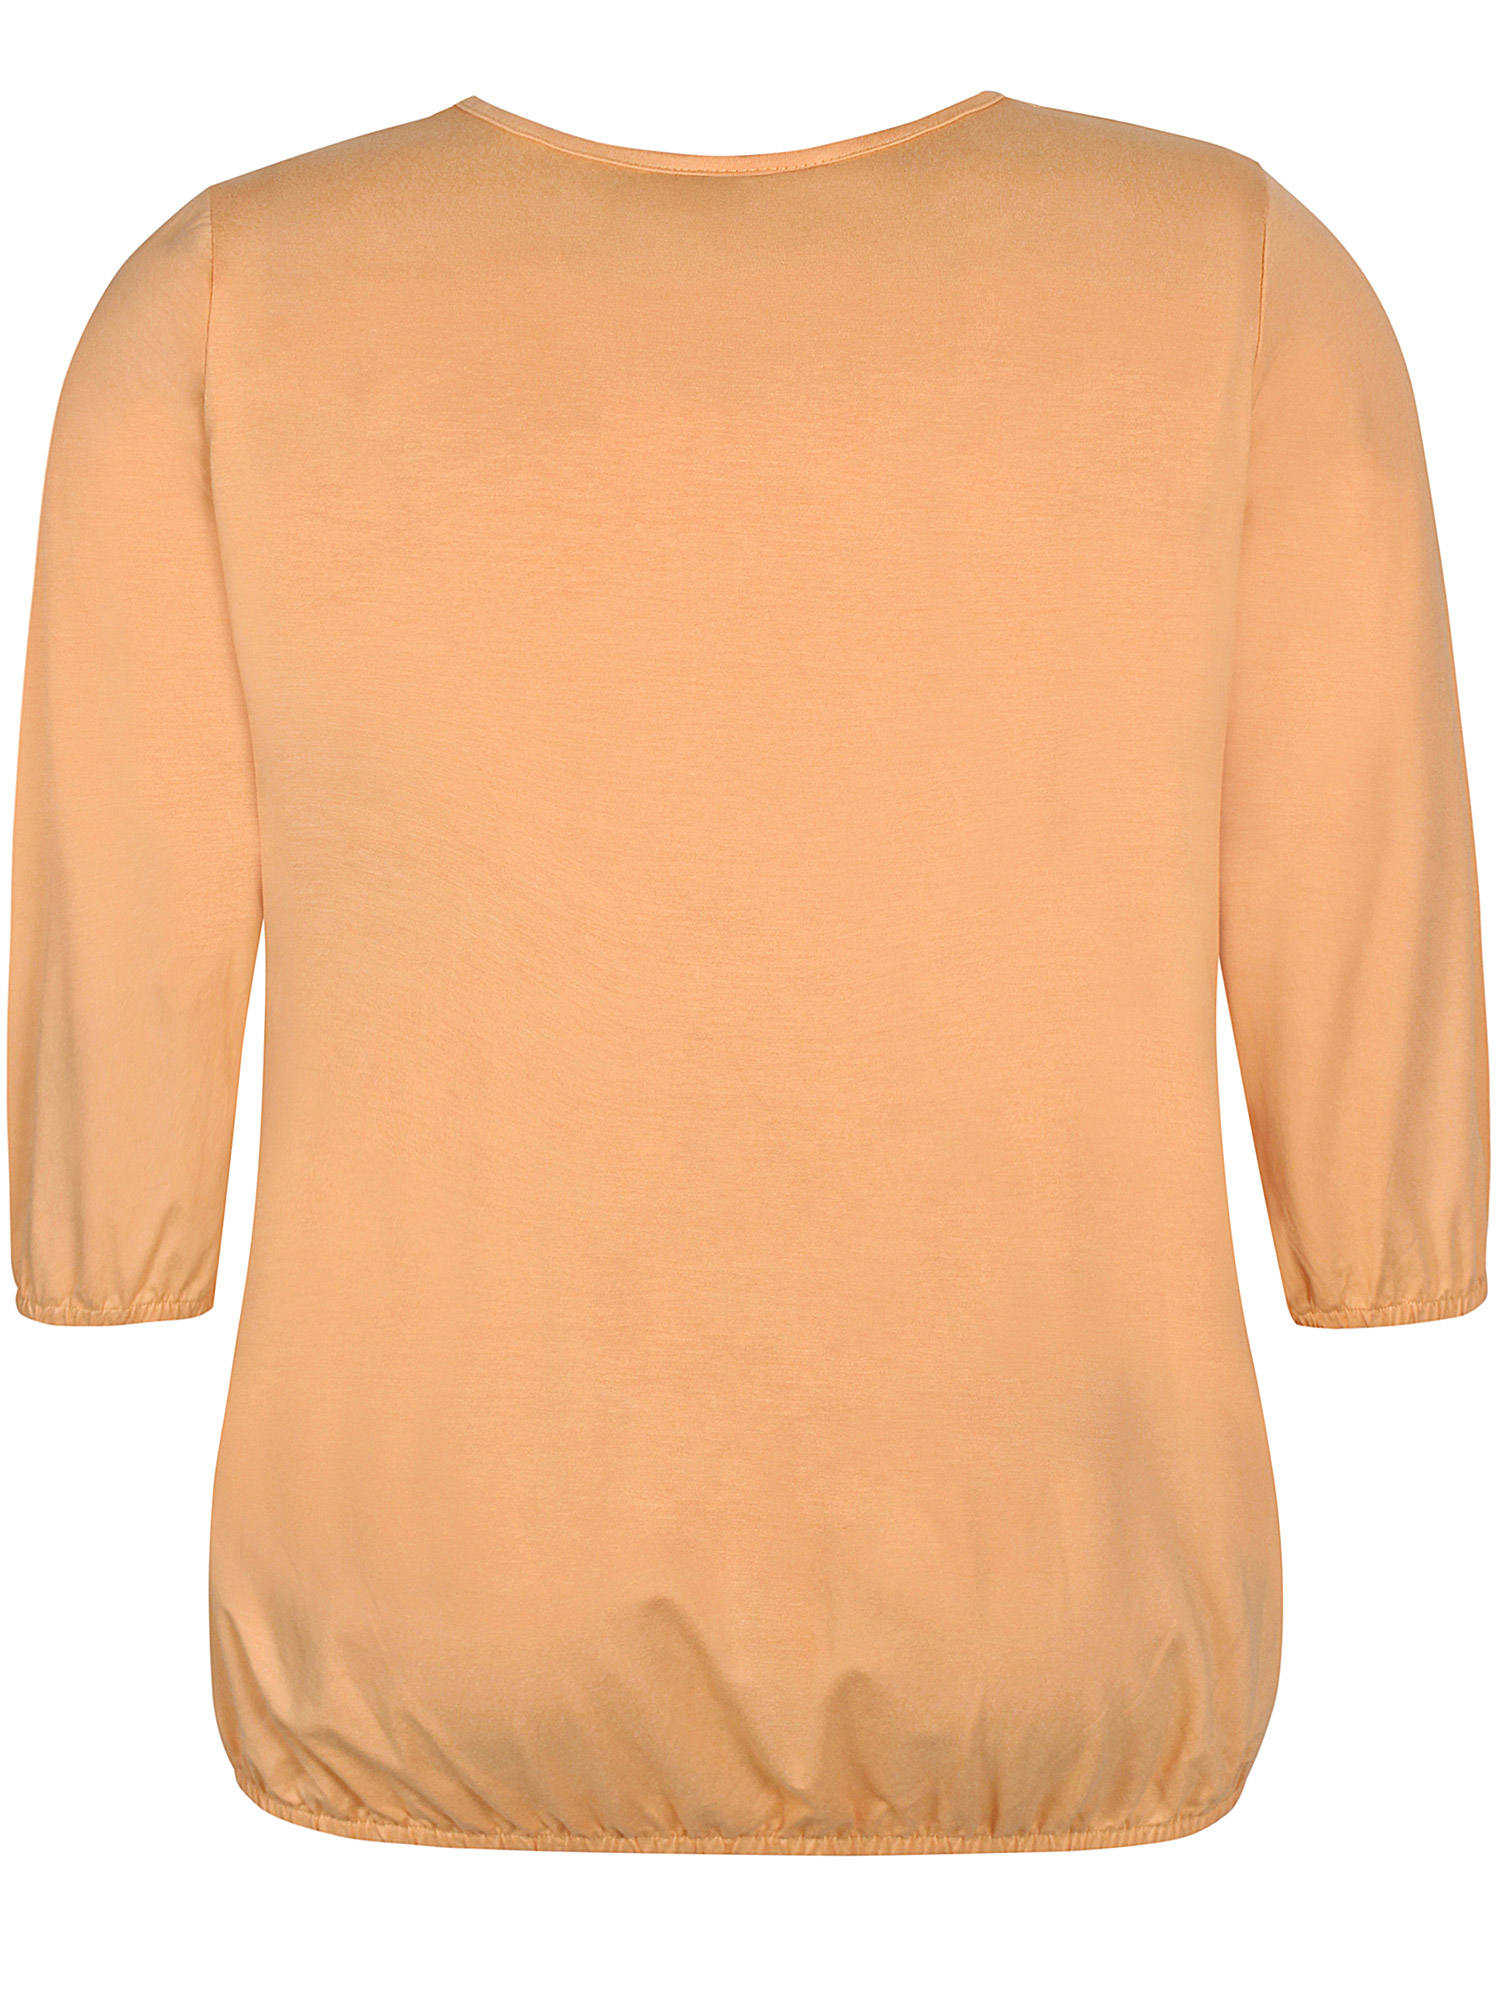 GIRO - Fersken farvet jersey bluse med elastikkant fra Zhenzi